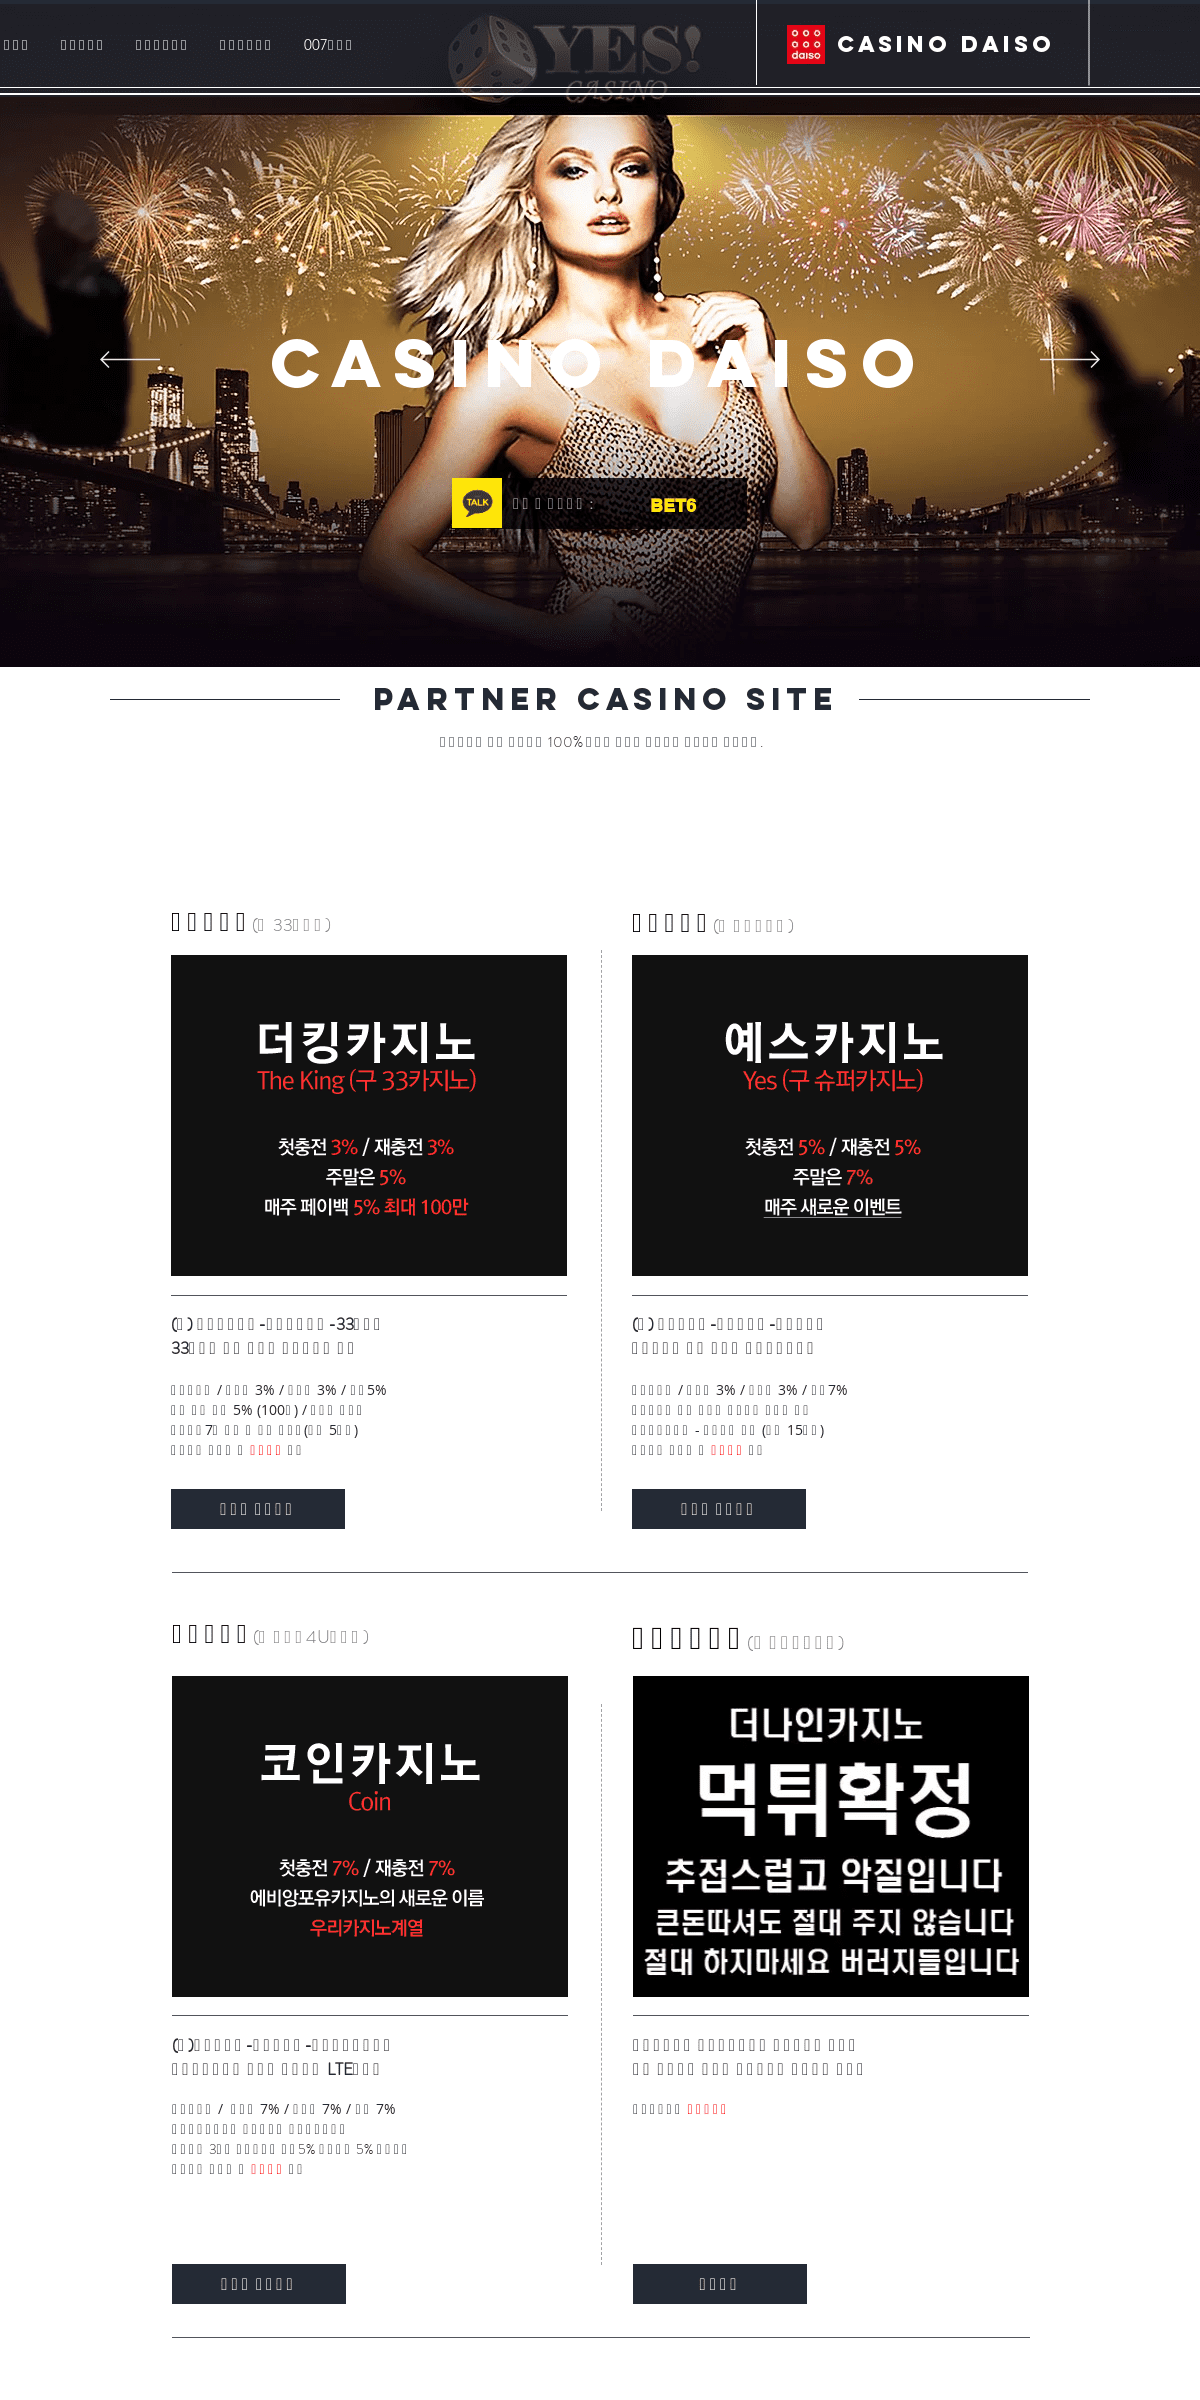 A complete backup of casinodaiso.com